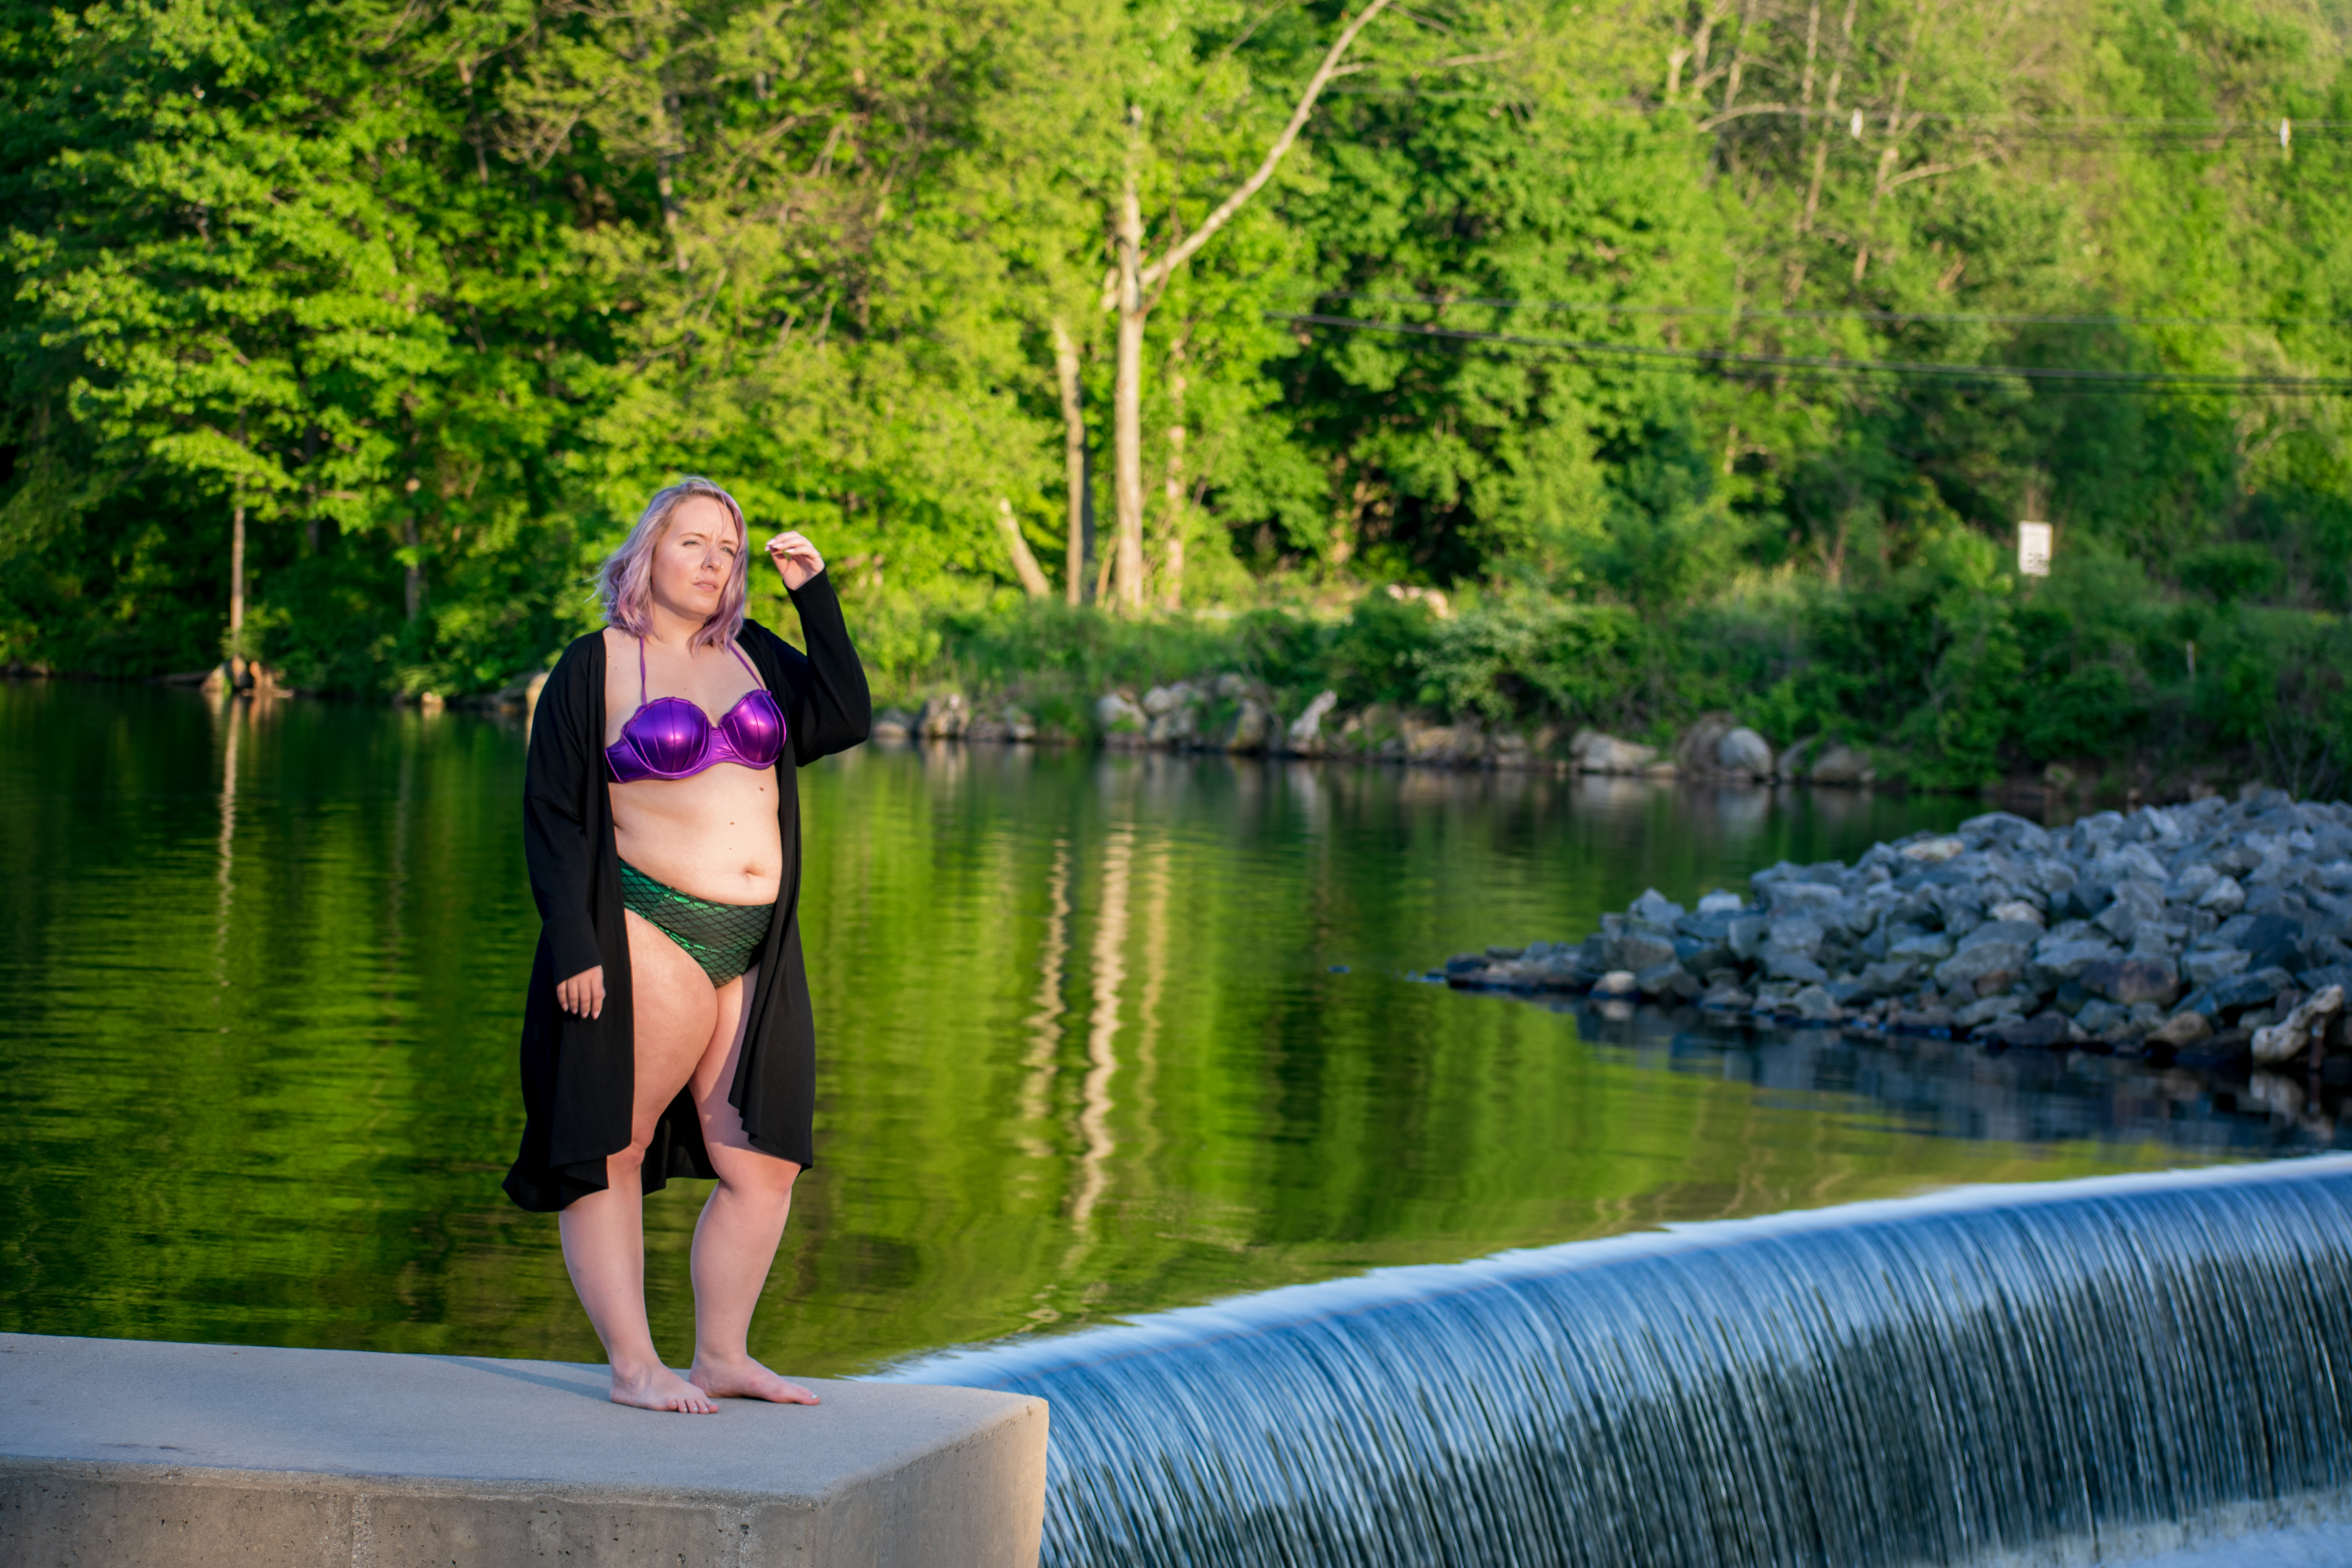 Mermaid Bathing Suit Waterfall